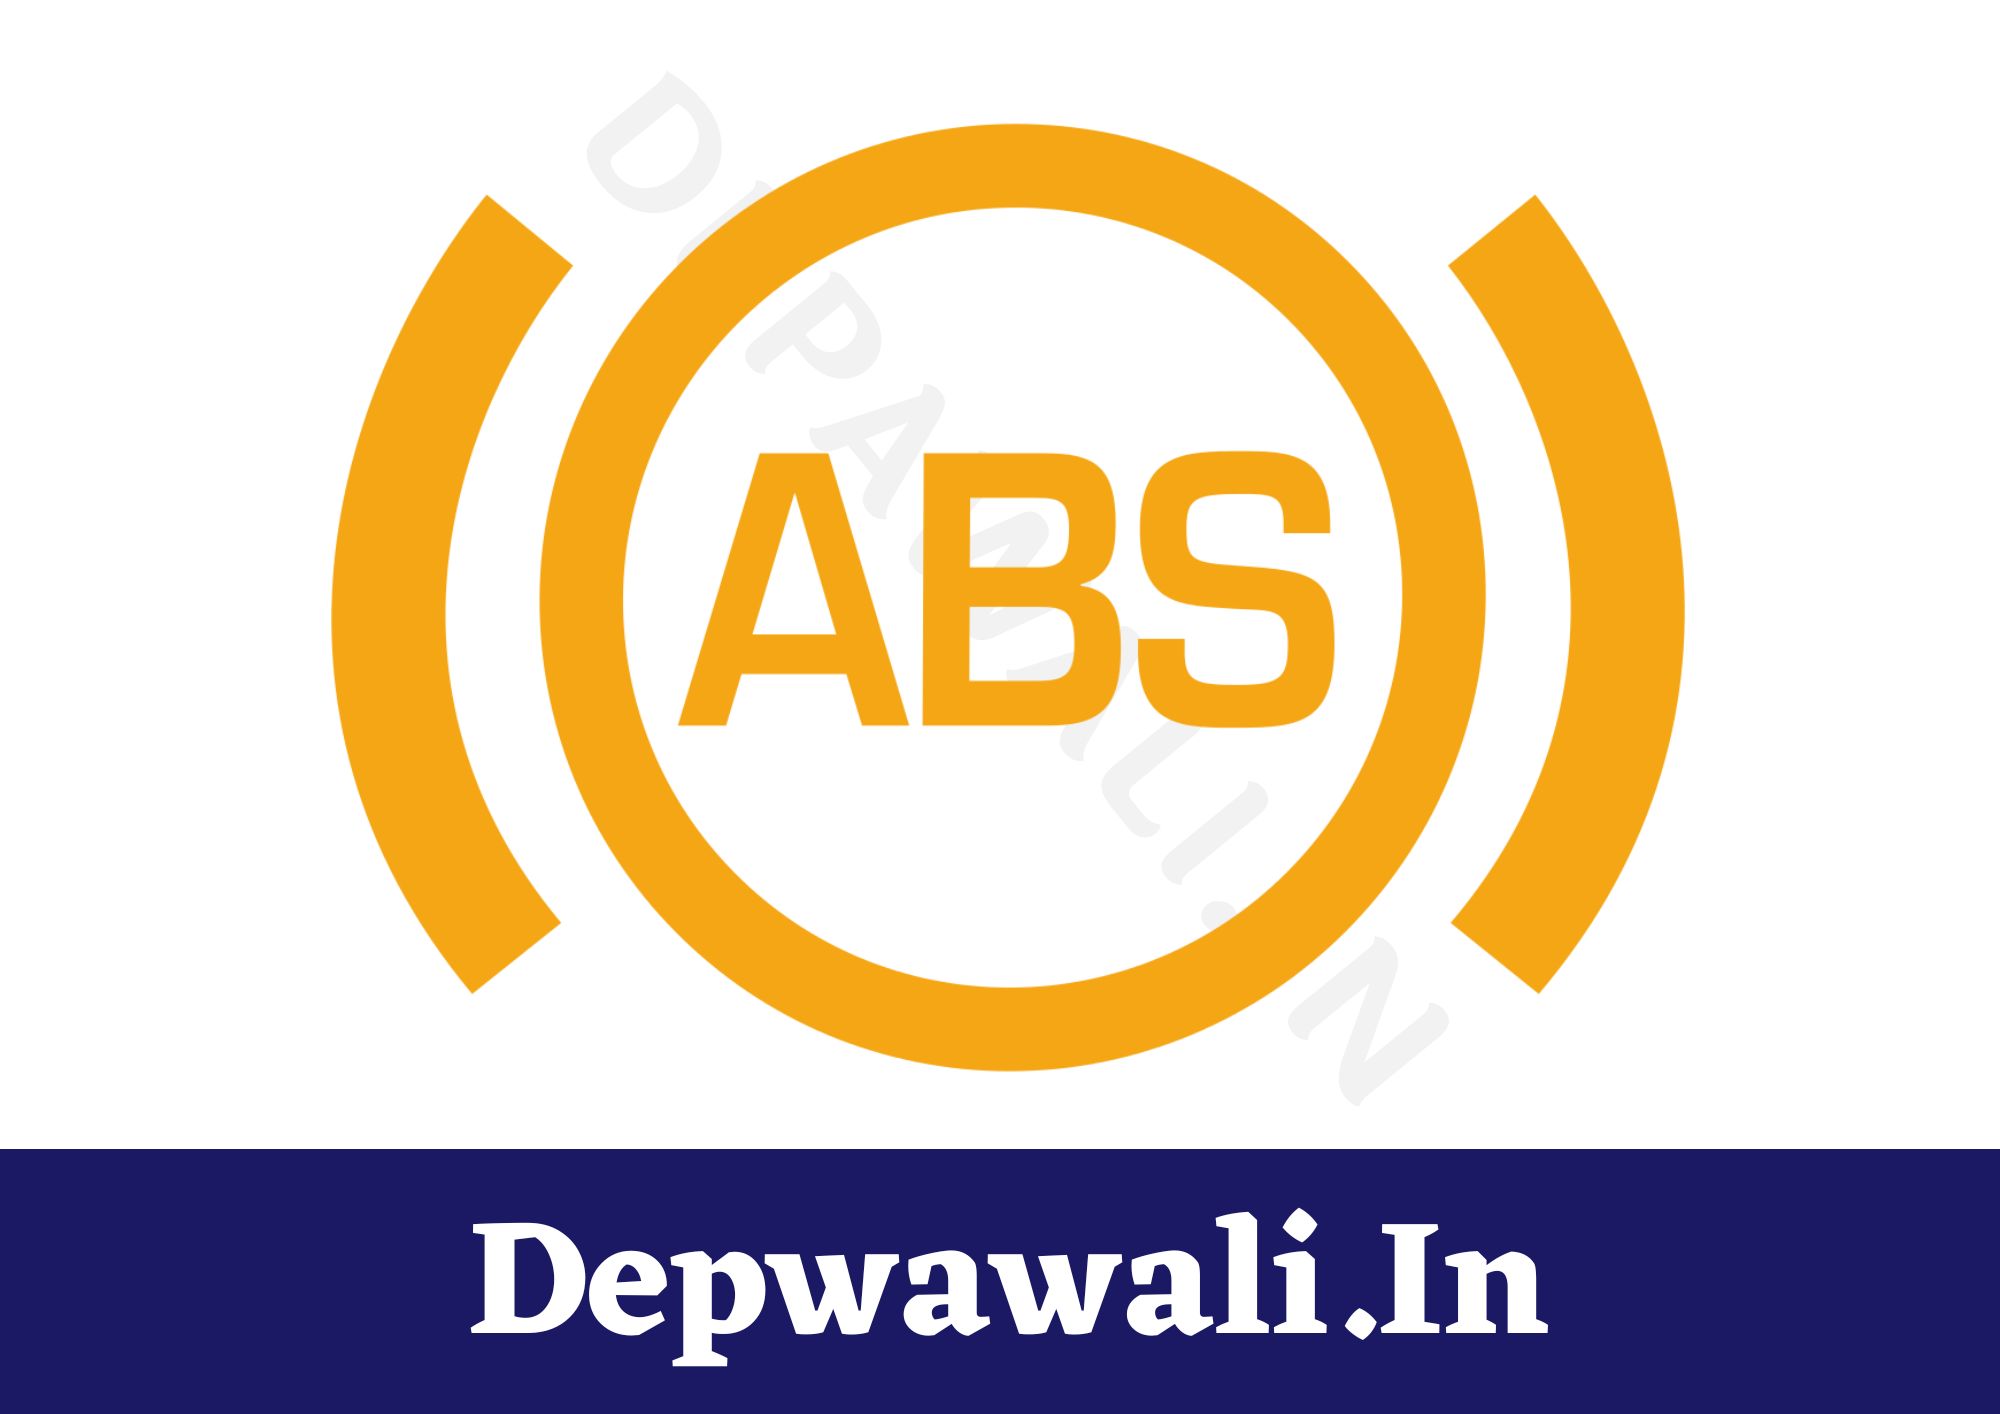 एबीएस क्या है? एबीएस वाली गाड़ी लेनी चाहिए या नहीं - (What Is ABS In Hindi)